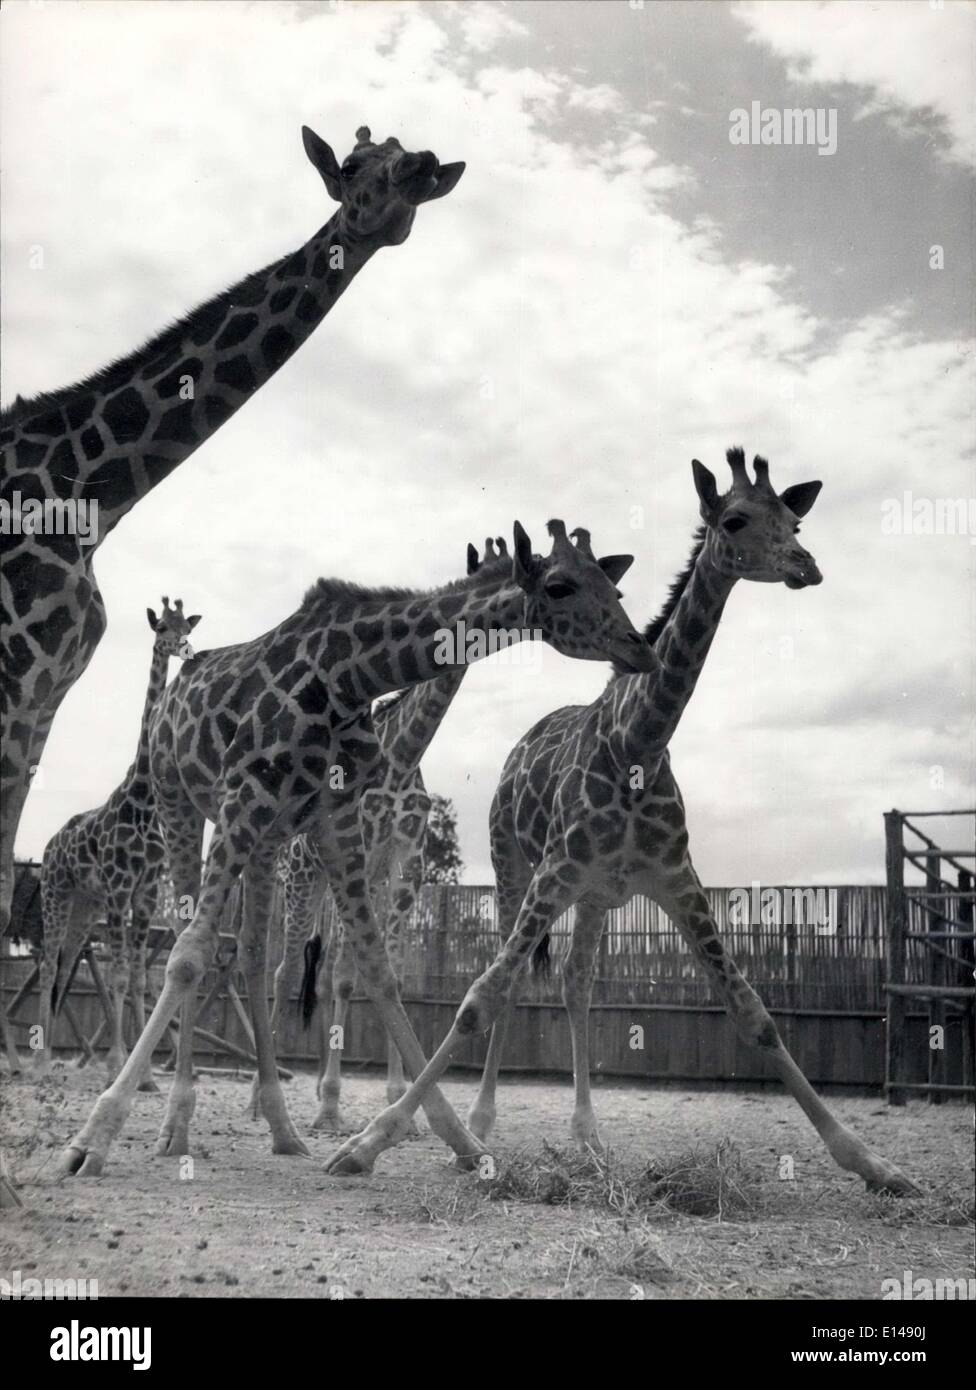 Le 17 avril 2012 - Deux - ou extensible. La station une girafe peut obtenir aux divisions : en dépit de leur taille et de leur dignité, de girafes regarder normalement, en fait, sont étonnamment souple - musclée , quand ils sont curieux ils peuvent vraiment se mettre au trafic. Sur Carr Hartley's la ferme des animaux au Kenya il y a toujours un troupeau dans l'une des enceintes, en attente d'expédition à l'étranger collections zoologiques. Troubles Mau Mau n'ont guère affecté ce Kenya l'exportation. Banque D'Images